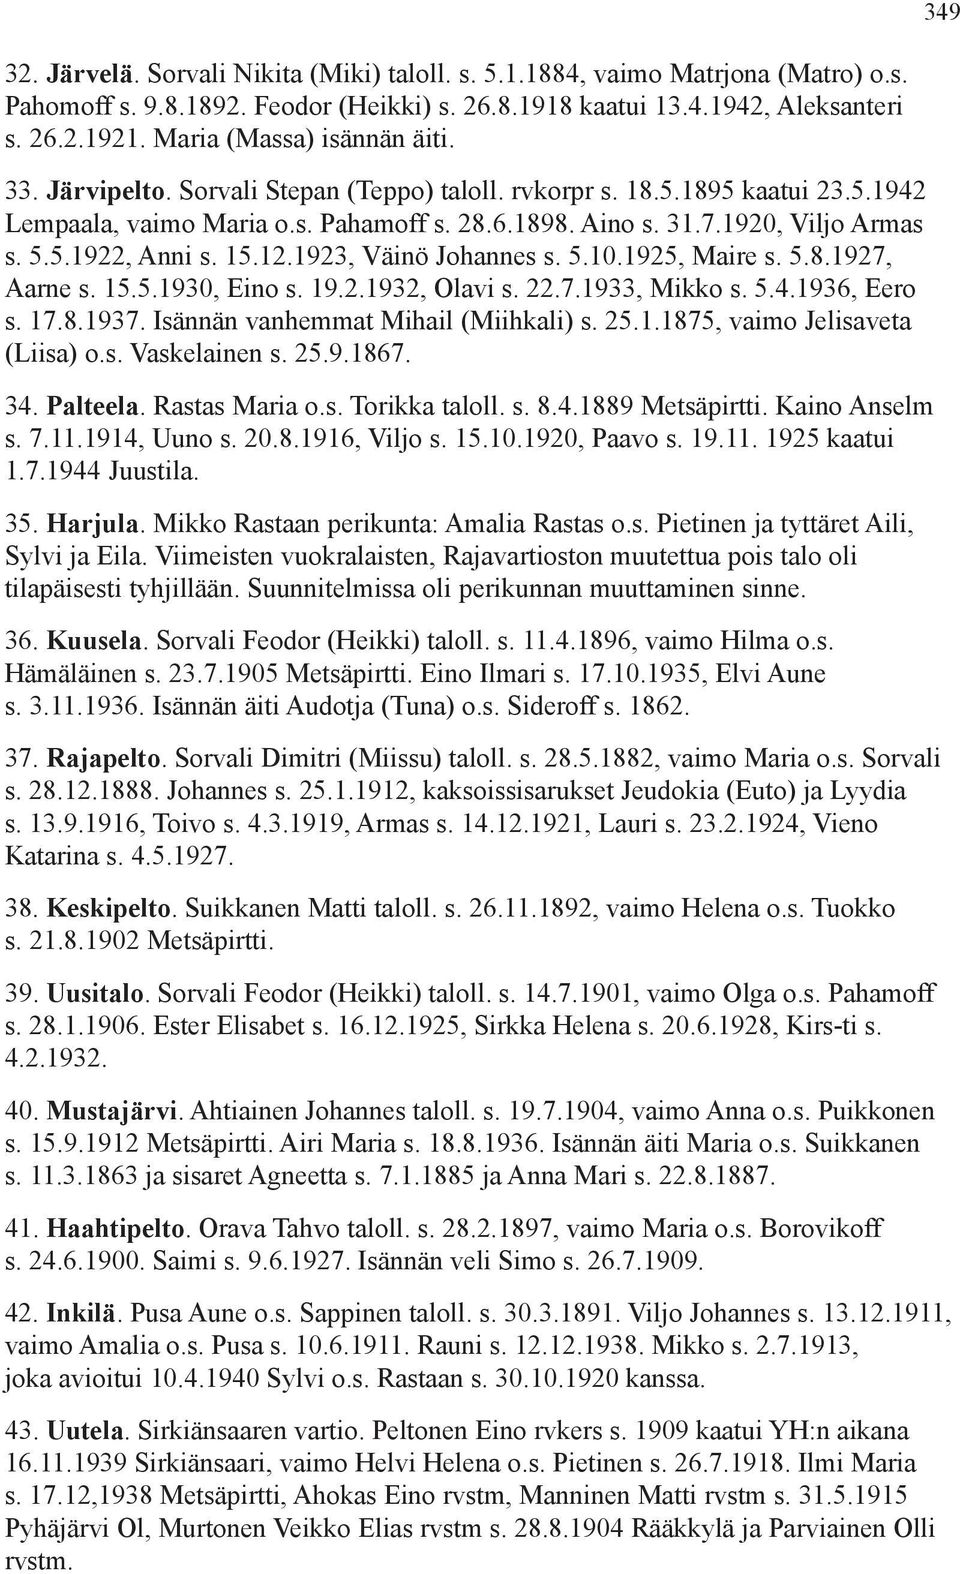 5.1922, Anni s. 15.12.1923, Väinö Johannes s. 5.10.1925, Maire s. 5.8.1927, Aarne s. 15.5.1930, Eino s. 19.2.1932, Olavi s. 22.7.1933, Mikko s. 5.4.1936, Eero s. 17.8.1937.